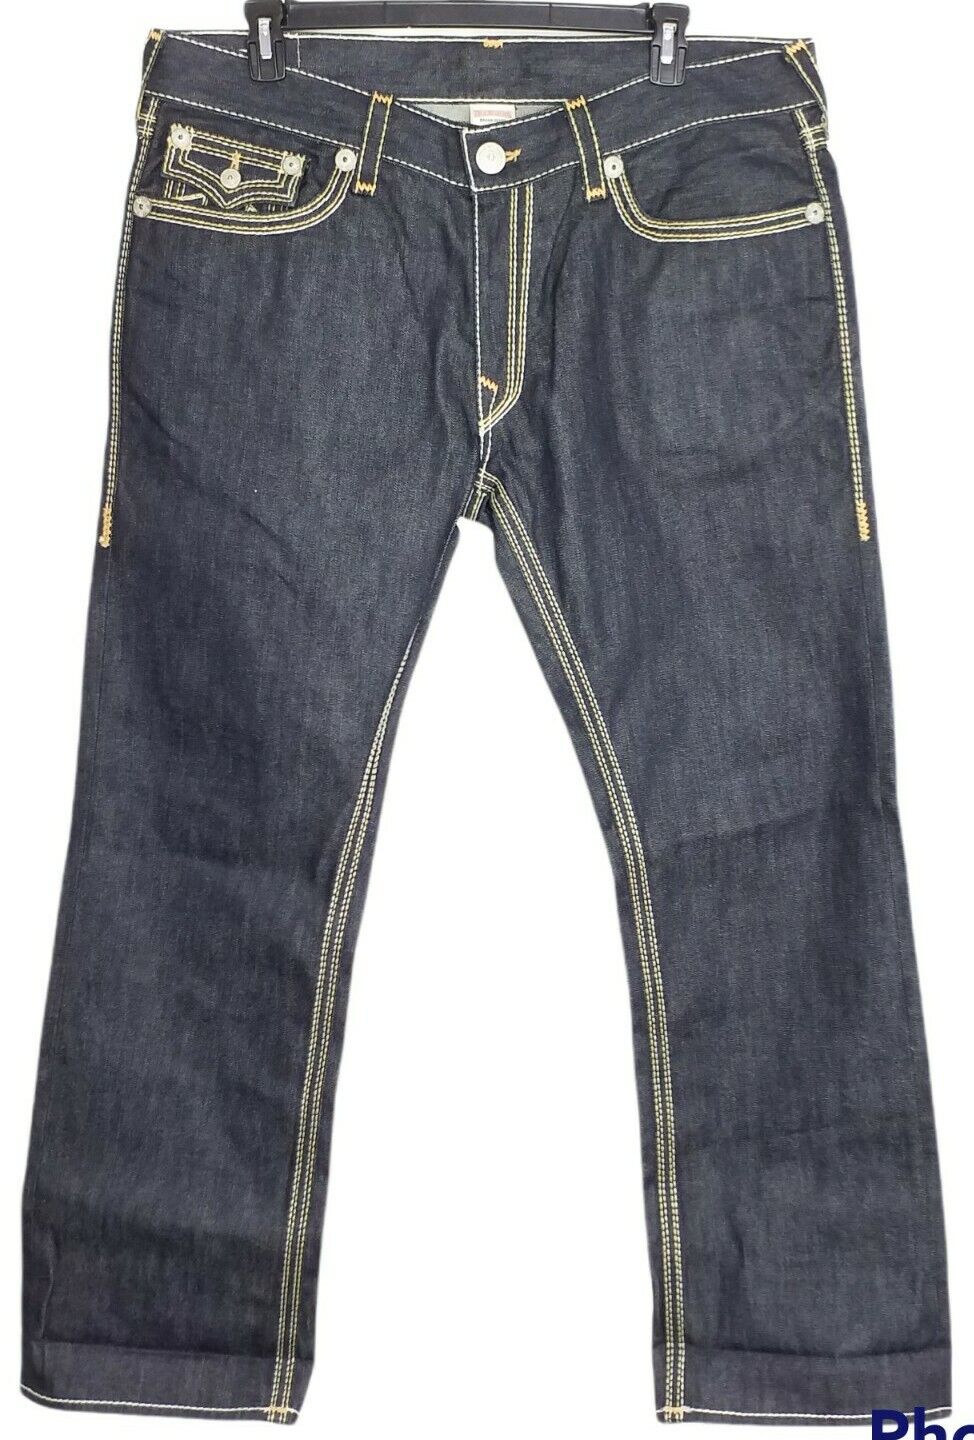 True Religion Ricky Big QT Seat Jeans JackKnife Stitched Size 40 Dark Wash NWOT Nowa popularność